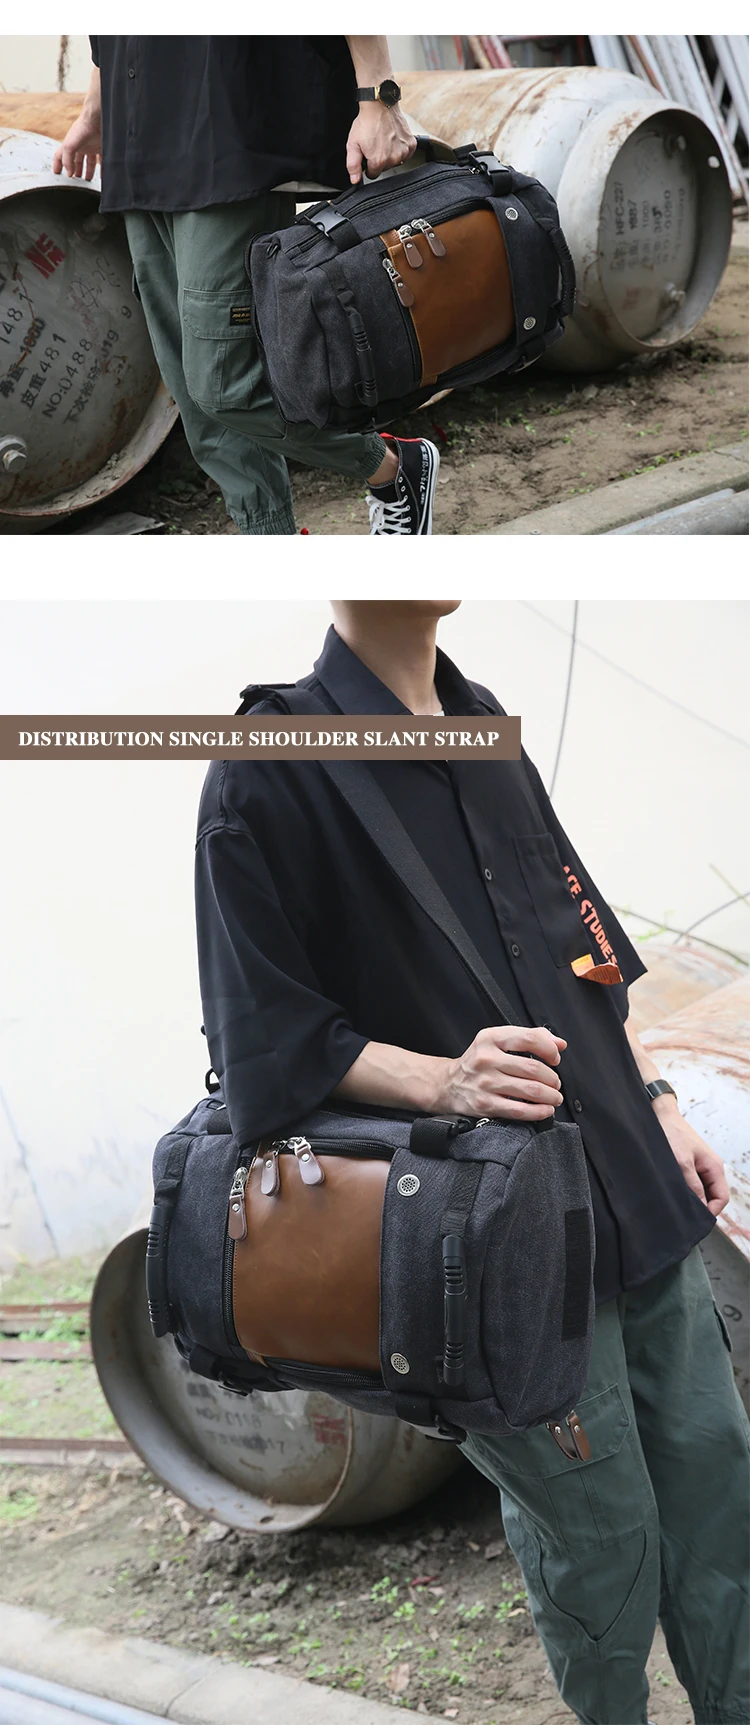 Xiao. P модный мужской рюкзак, винтажный холщовый рюкзак, многофункциональный рюкзак для альпинизма, пешего туризма, альпинизма, кемпинга